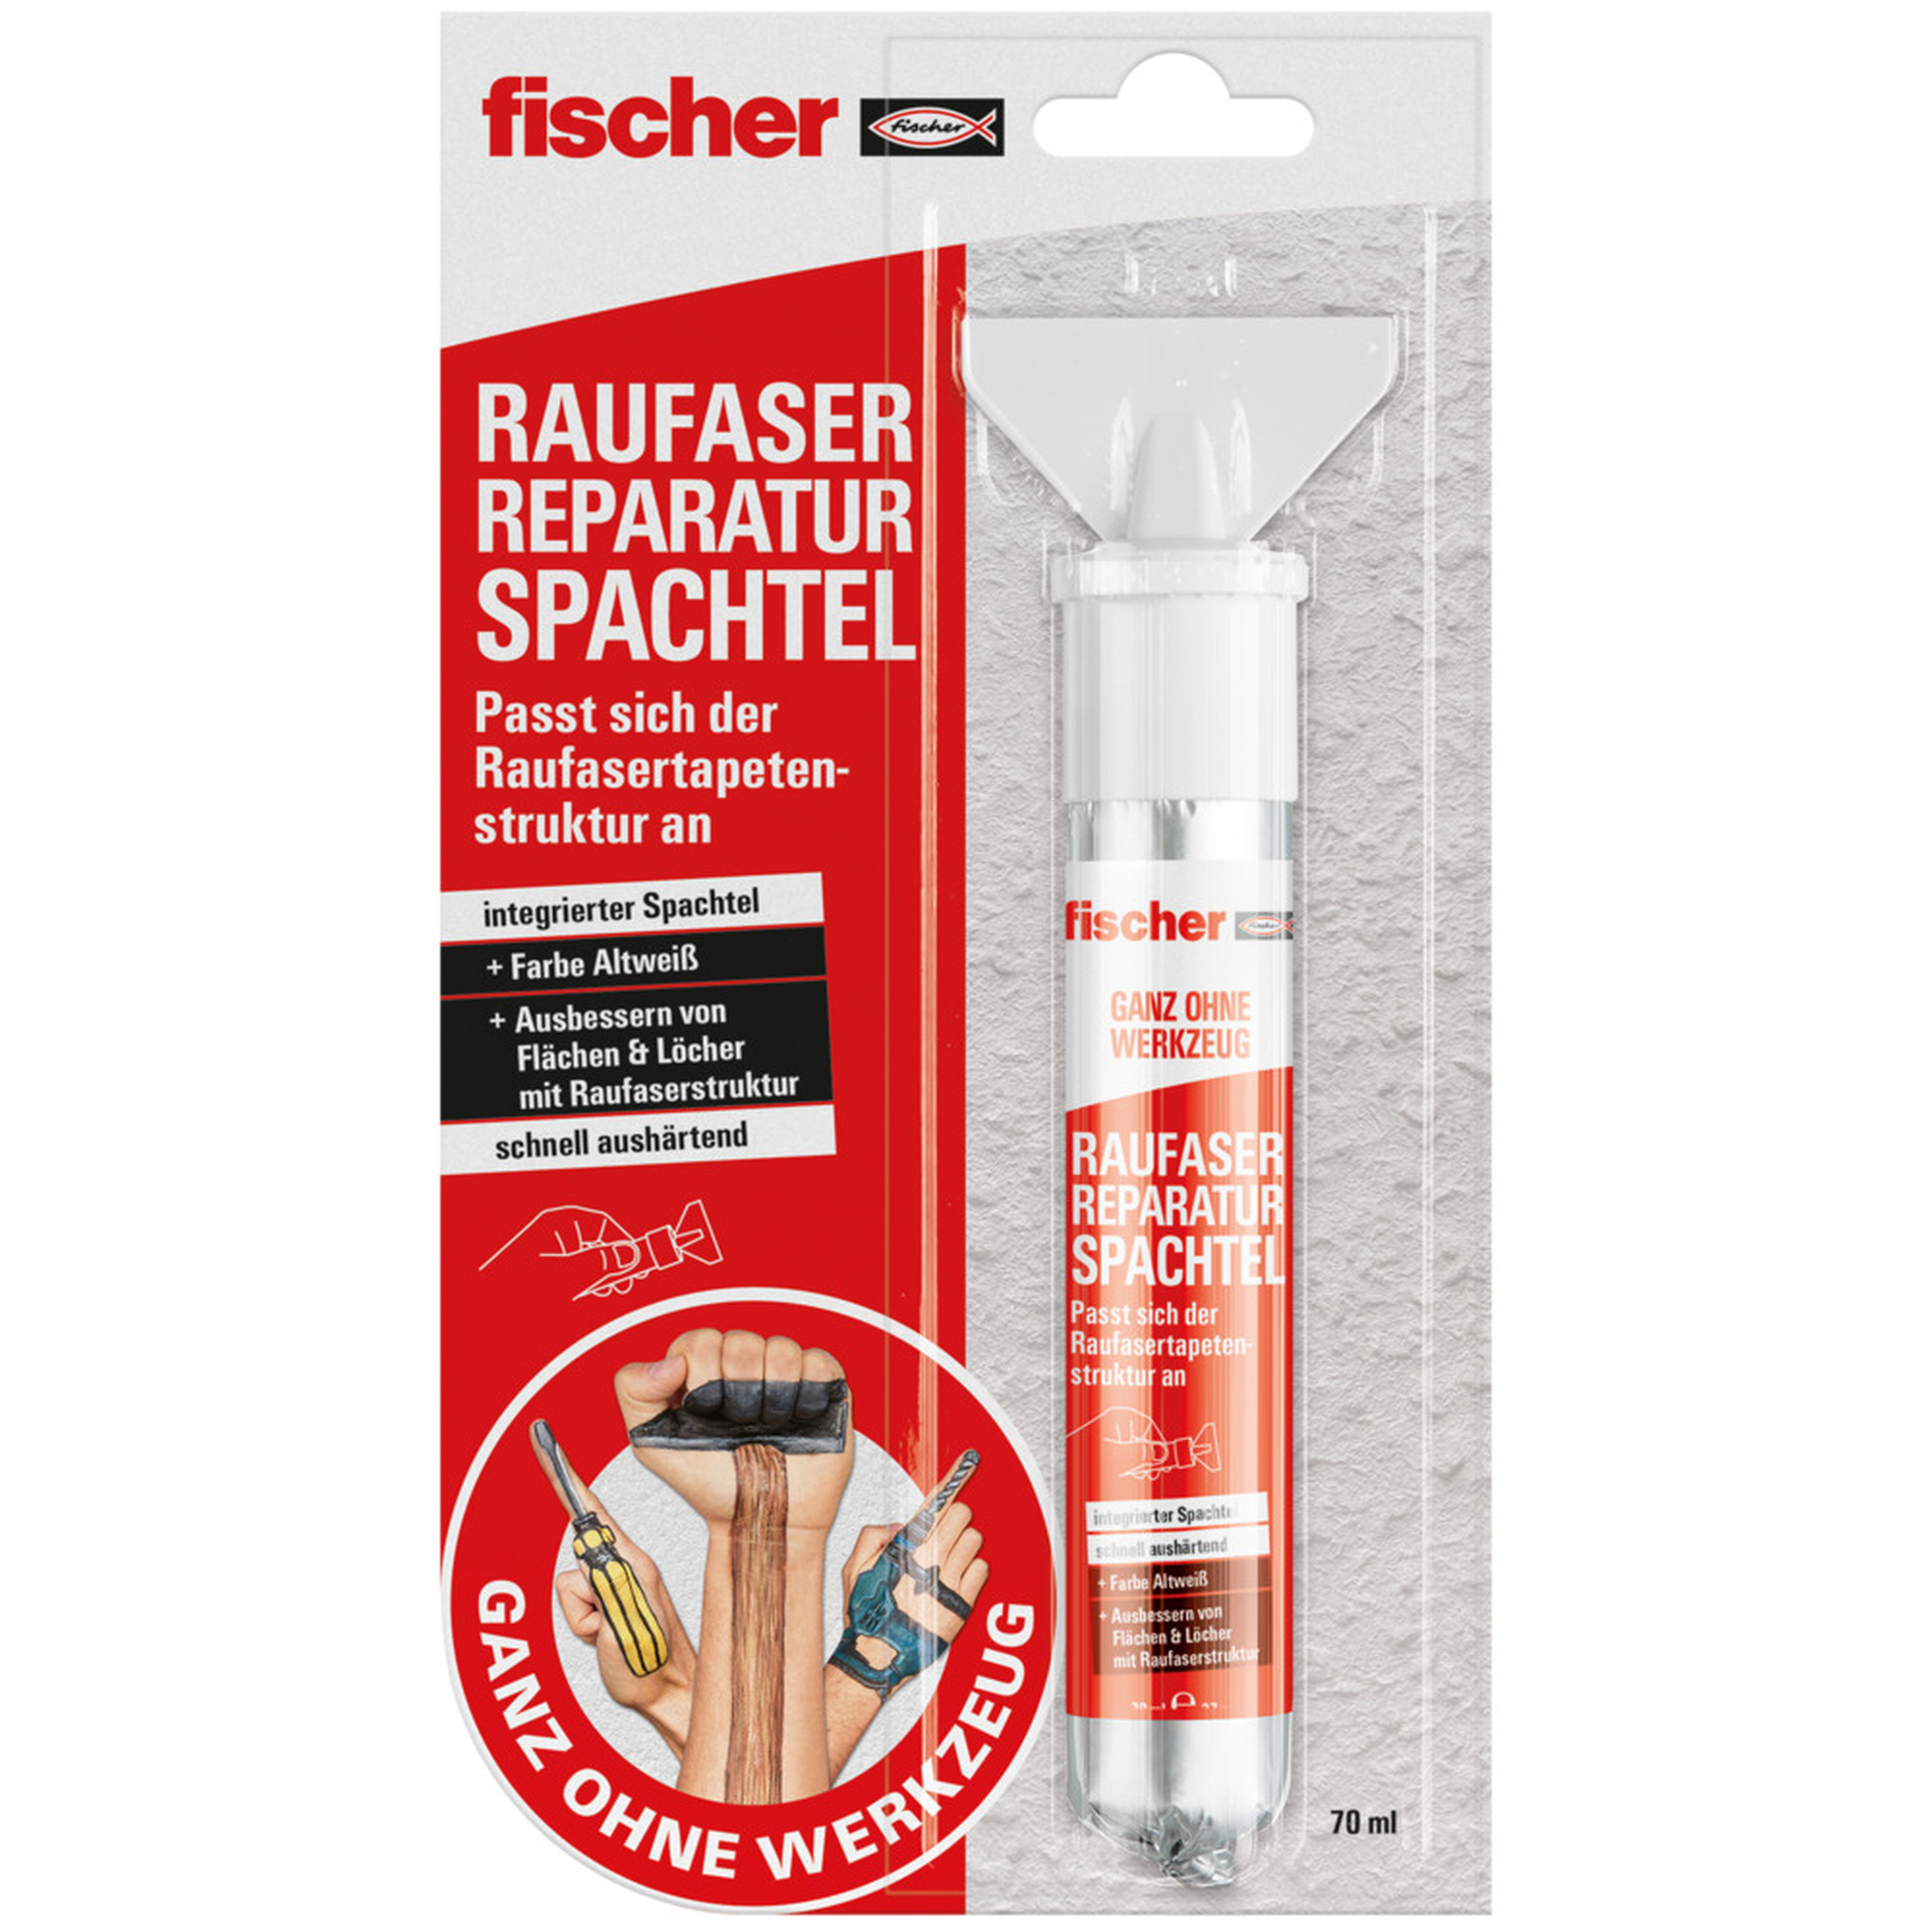 Raufaser-Reparaturspachtel 'Ganz ohne Werkzeug' 70 ml + product picture